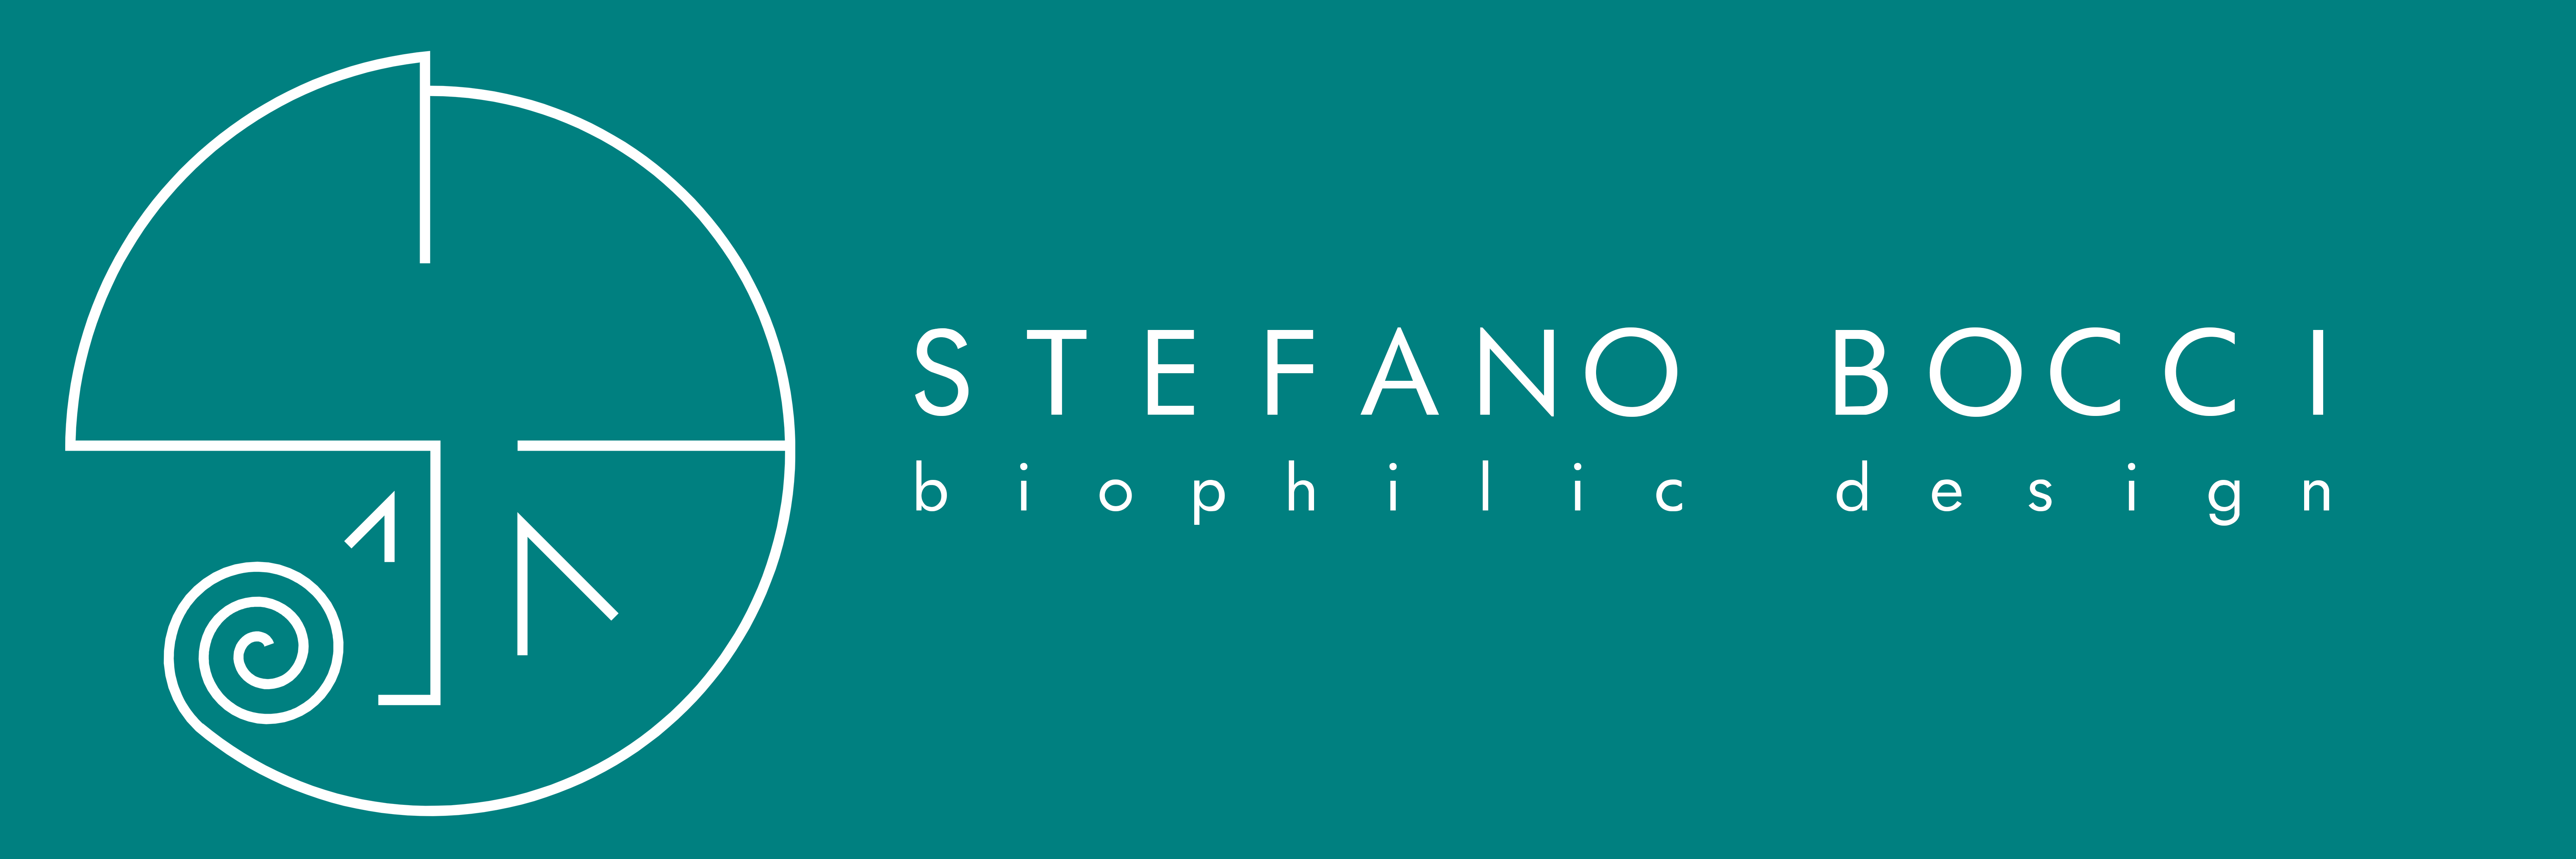 STEFANO BOCCI - biophilic design